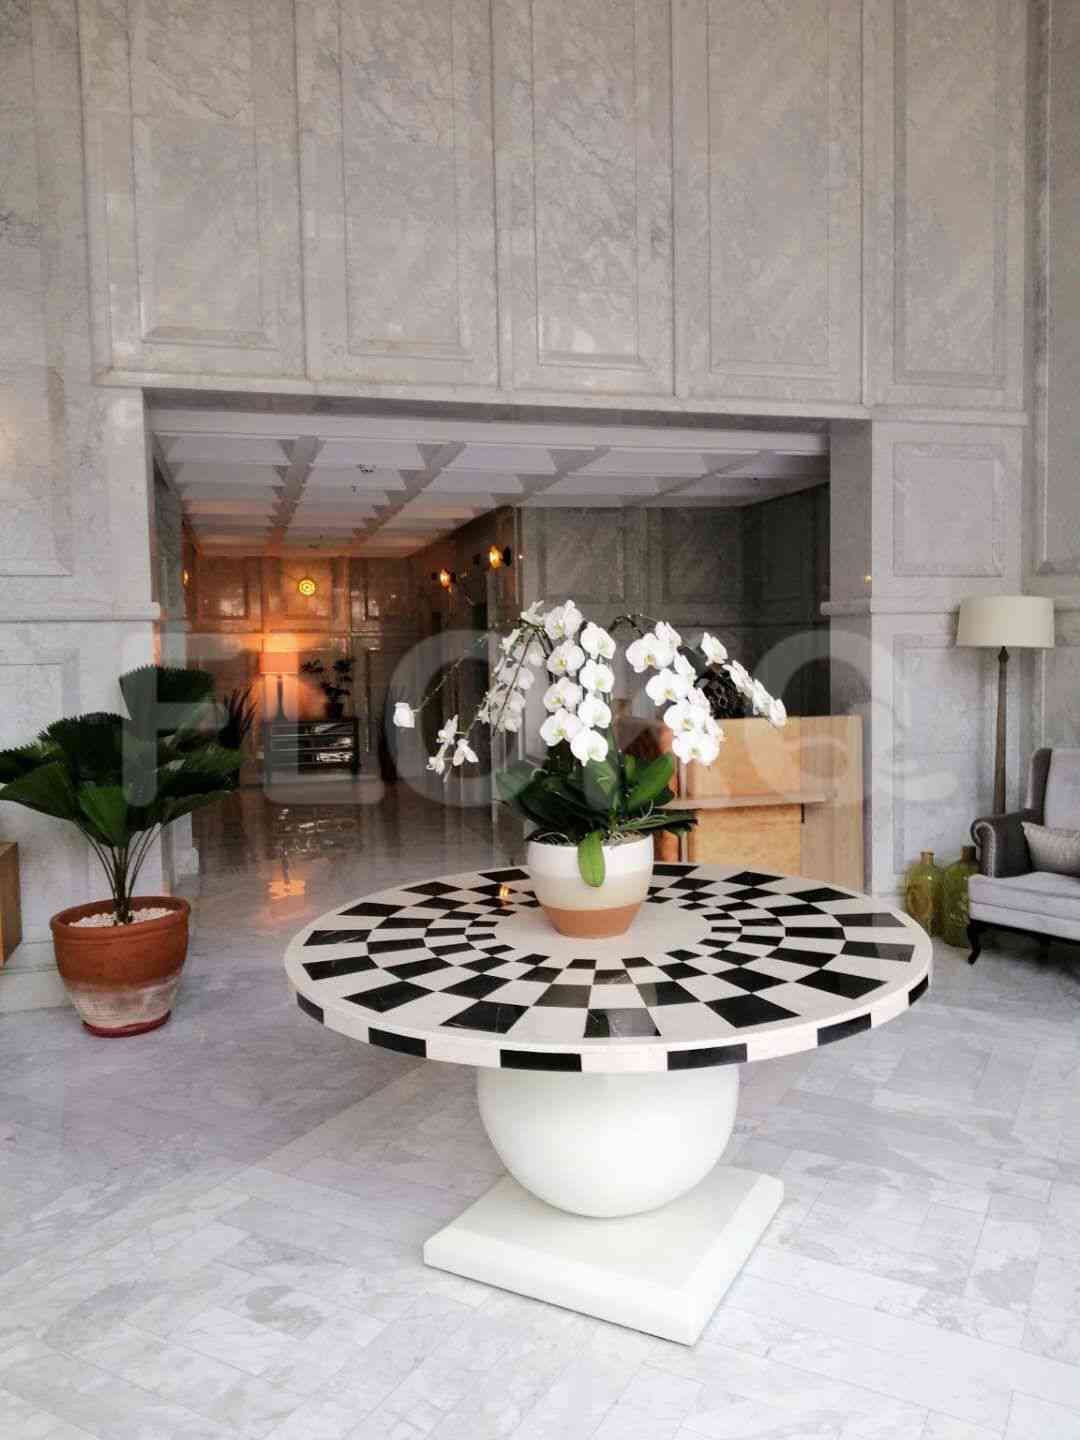 2 Bedroom on 18th Floor for Rent in Sudirman Suites Jakarta - fsu69e 18